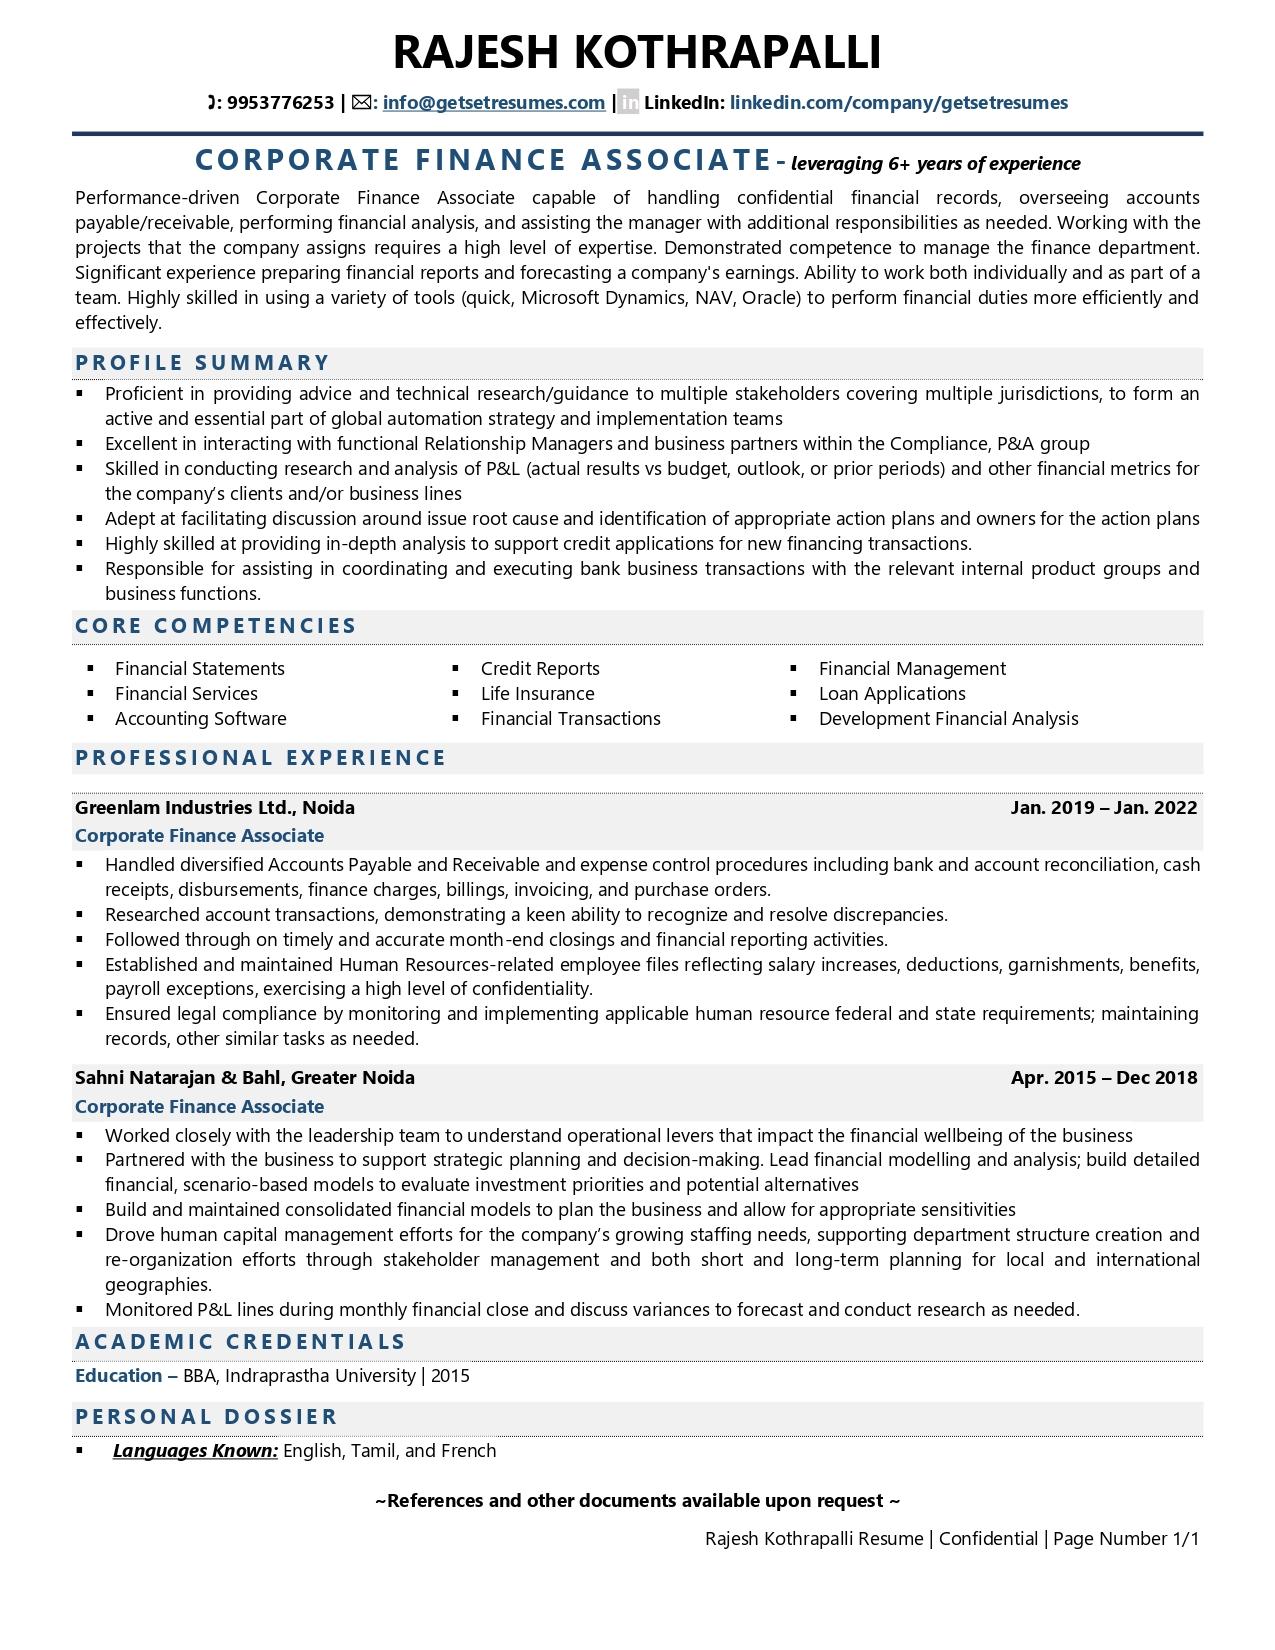 Corporate Finance - Associate - Resume Example & Template